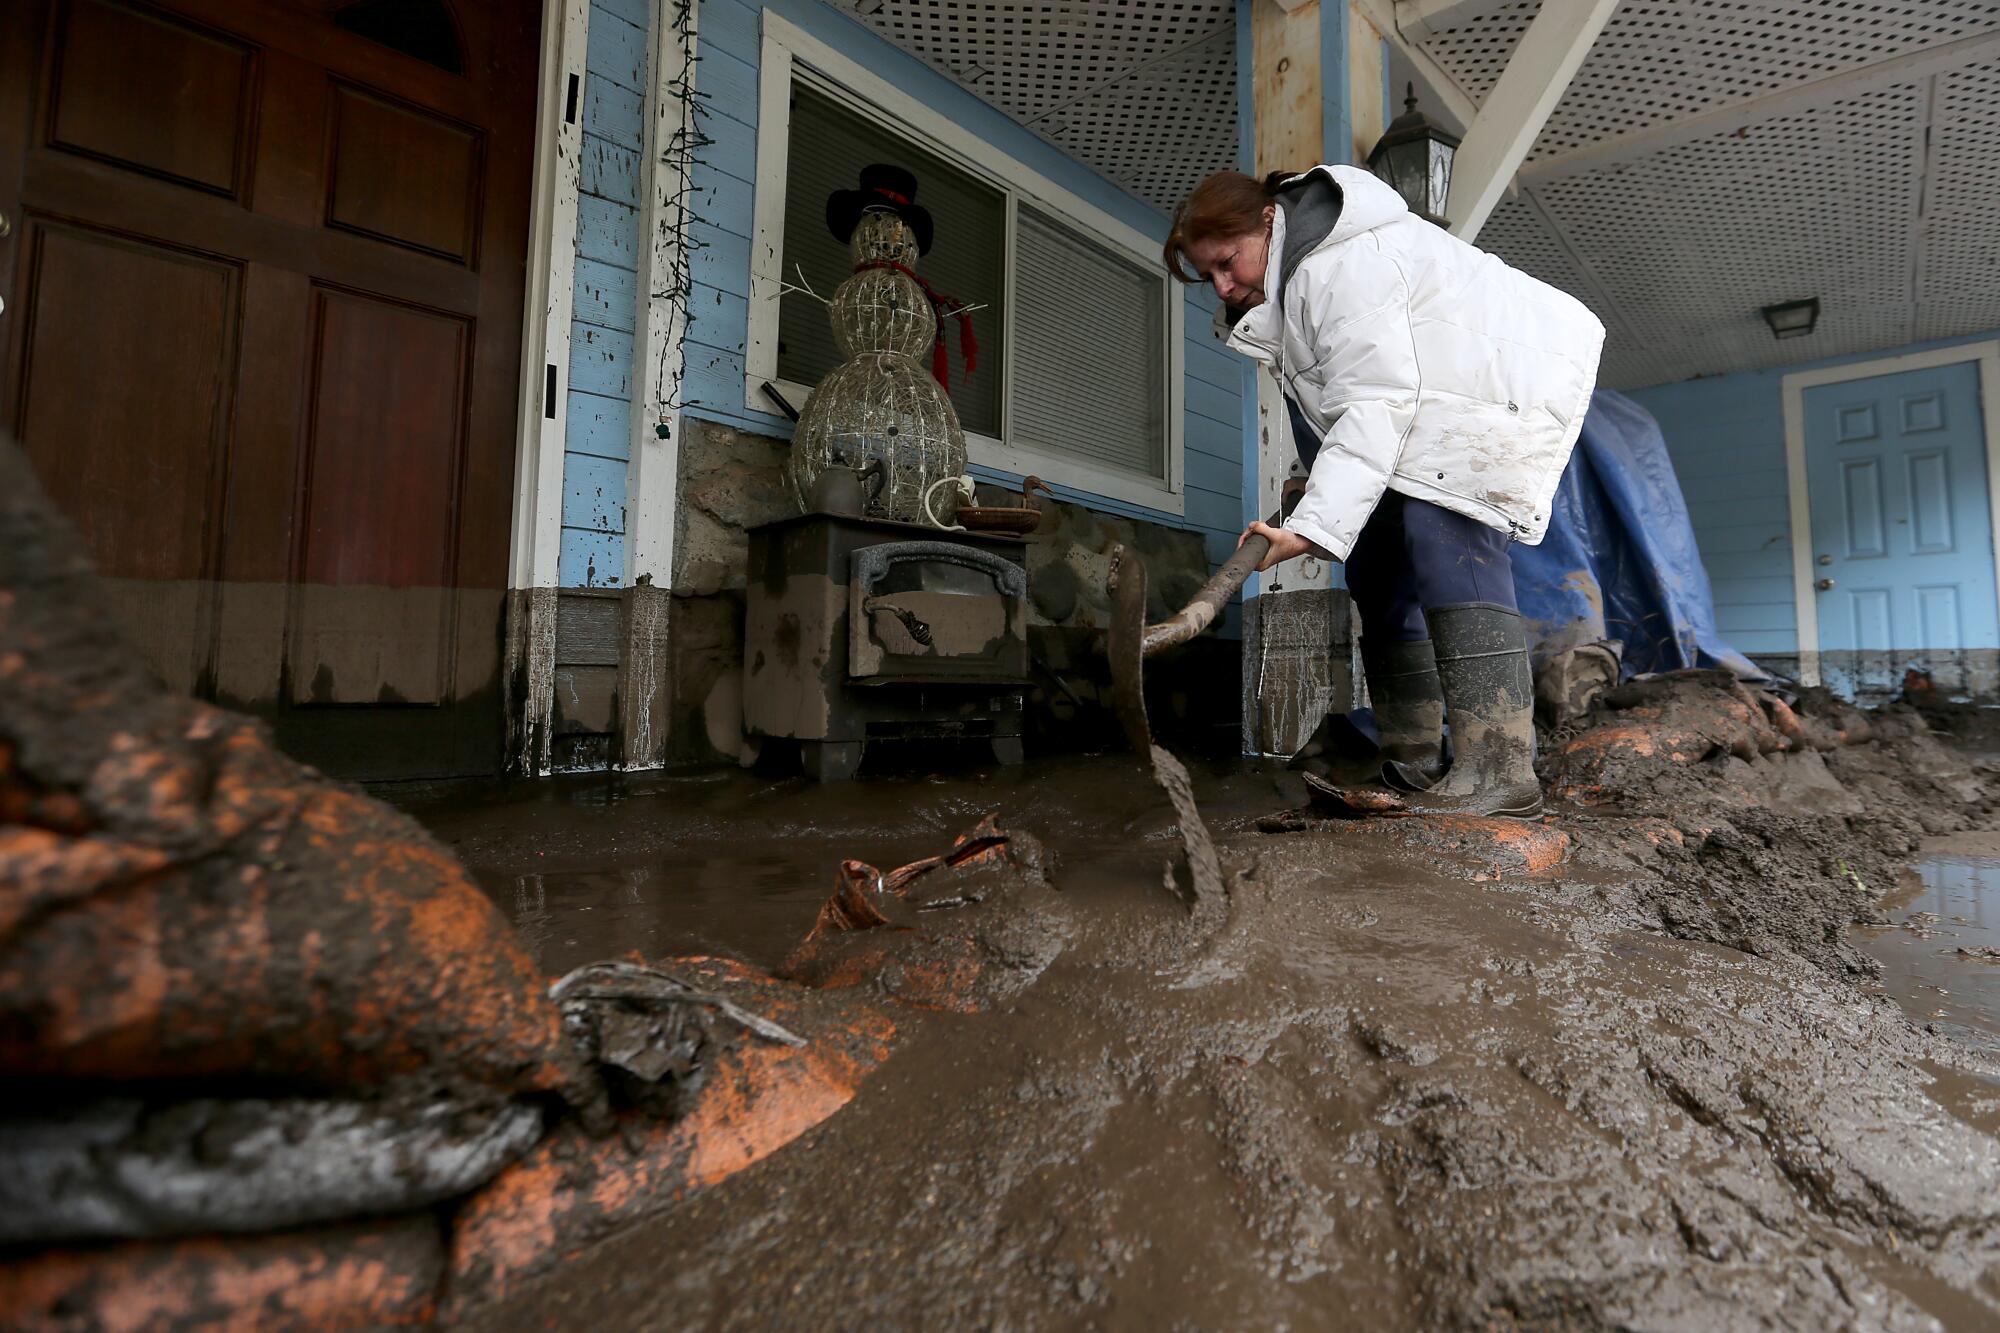 A woman shovels mud outside a house